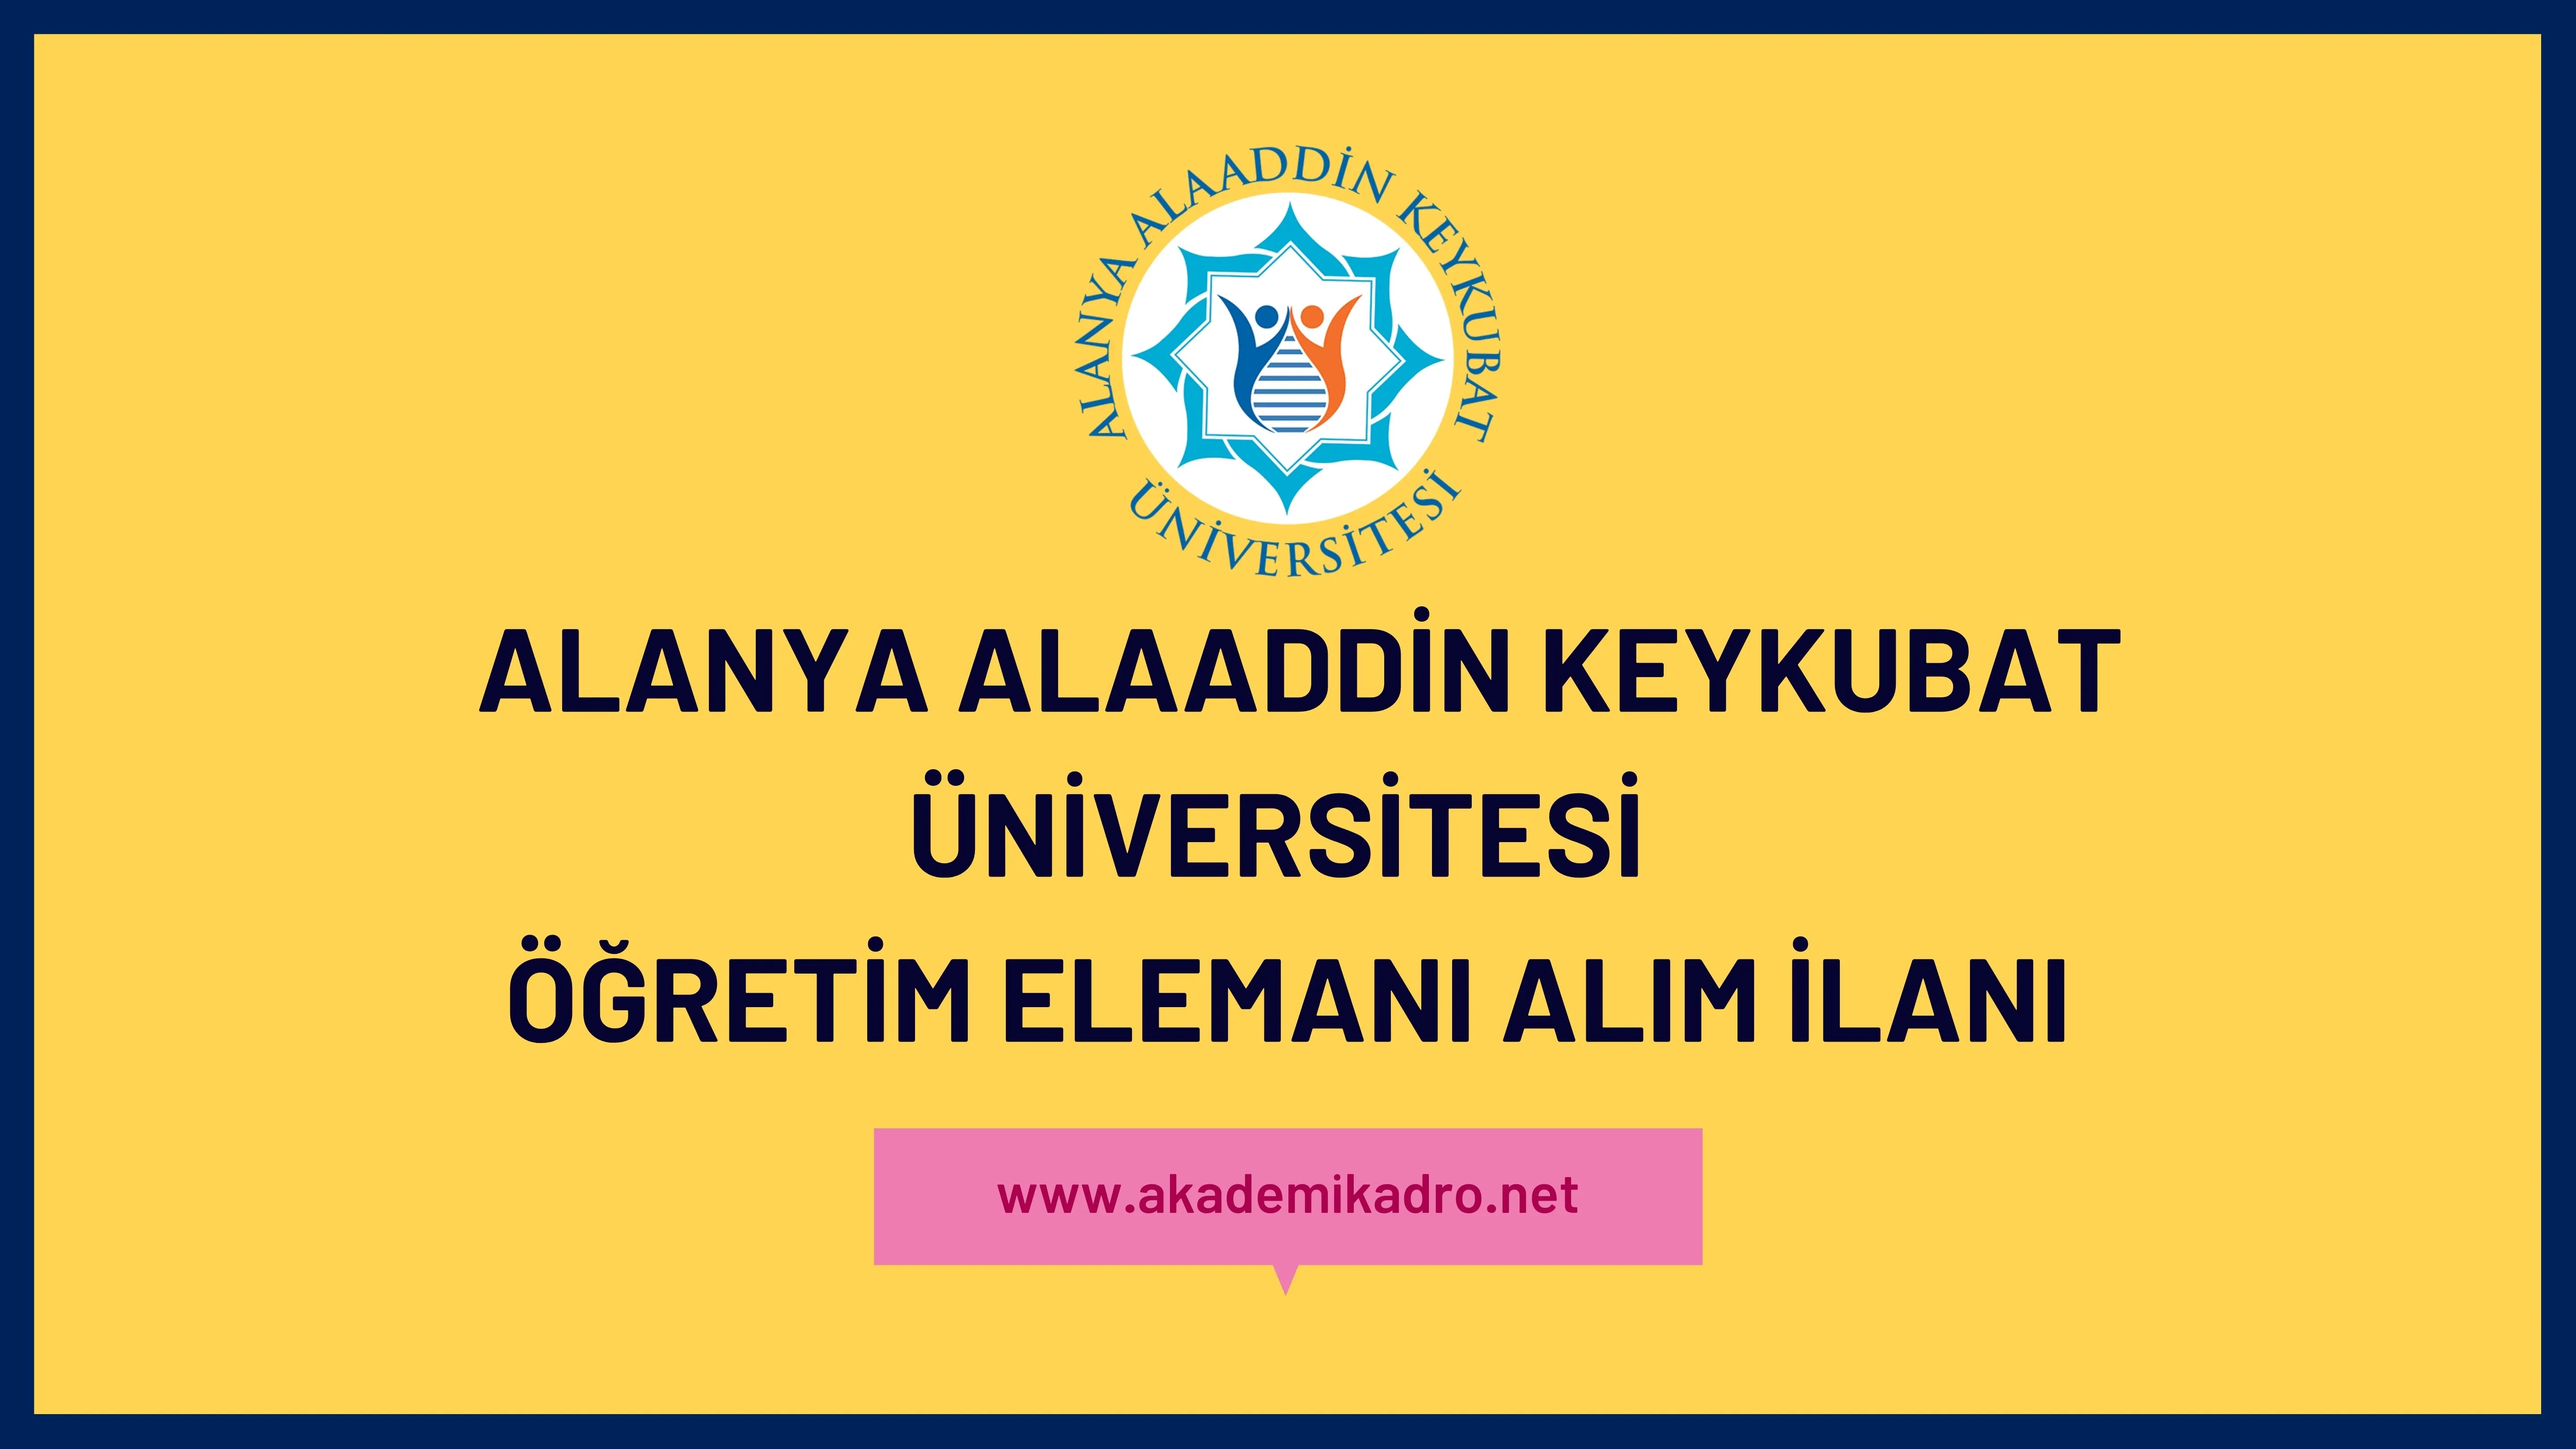 Alanya Alaaddin Keykubat Üniversitesi 20 Öğretim Üyesi, 8 Öğretim Görevlisi ve Araştırma görevlisi alacak. Son başvuru tarihi 15 Kasım 2022.